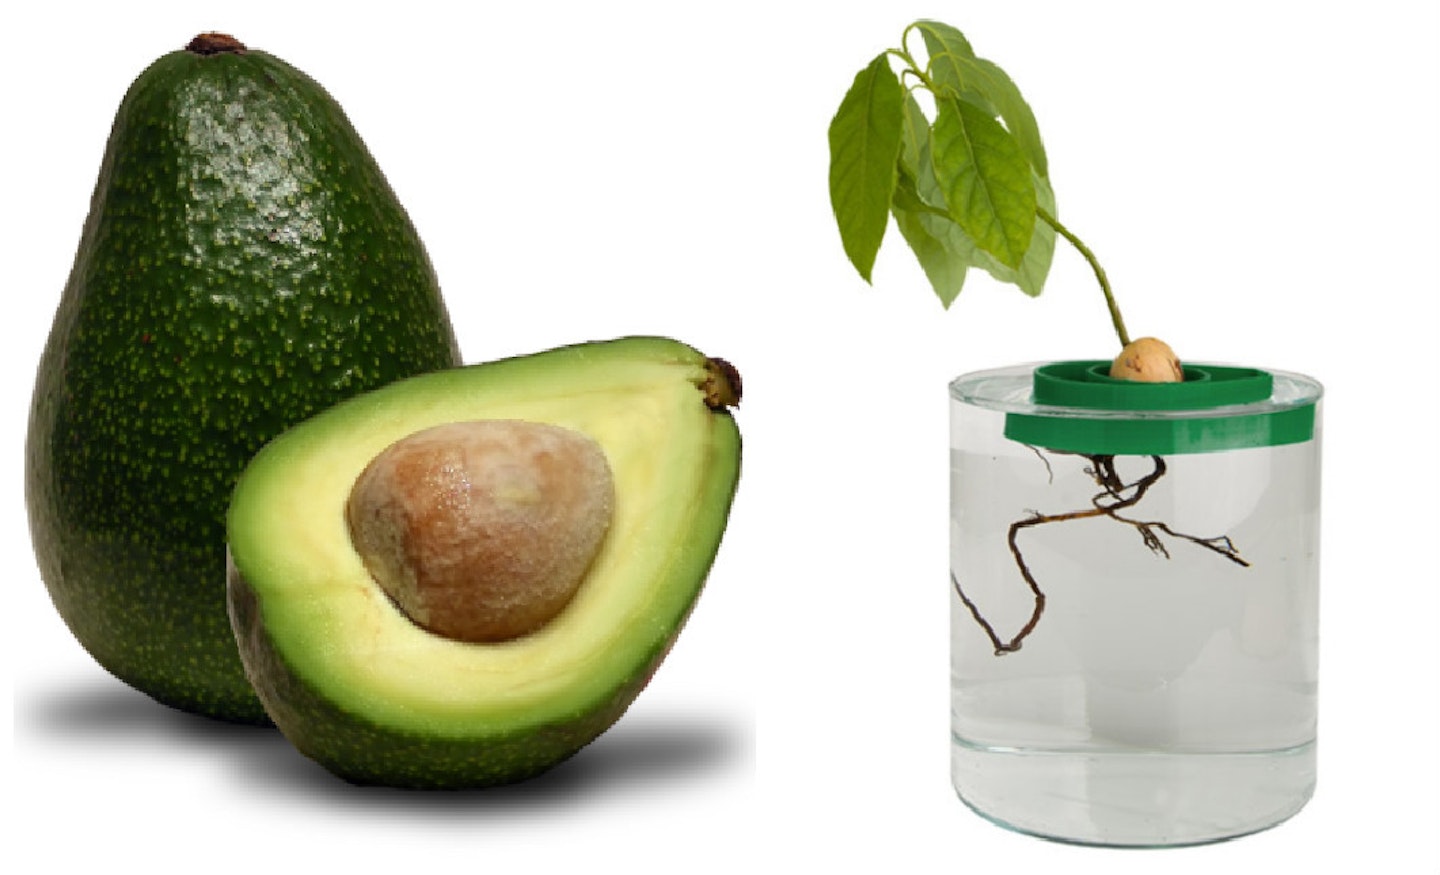 Left: The Endangered Avocado         Right: The Avoseedo